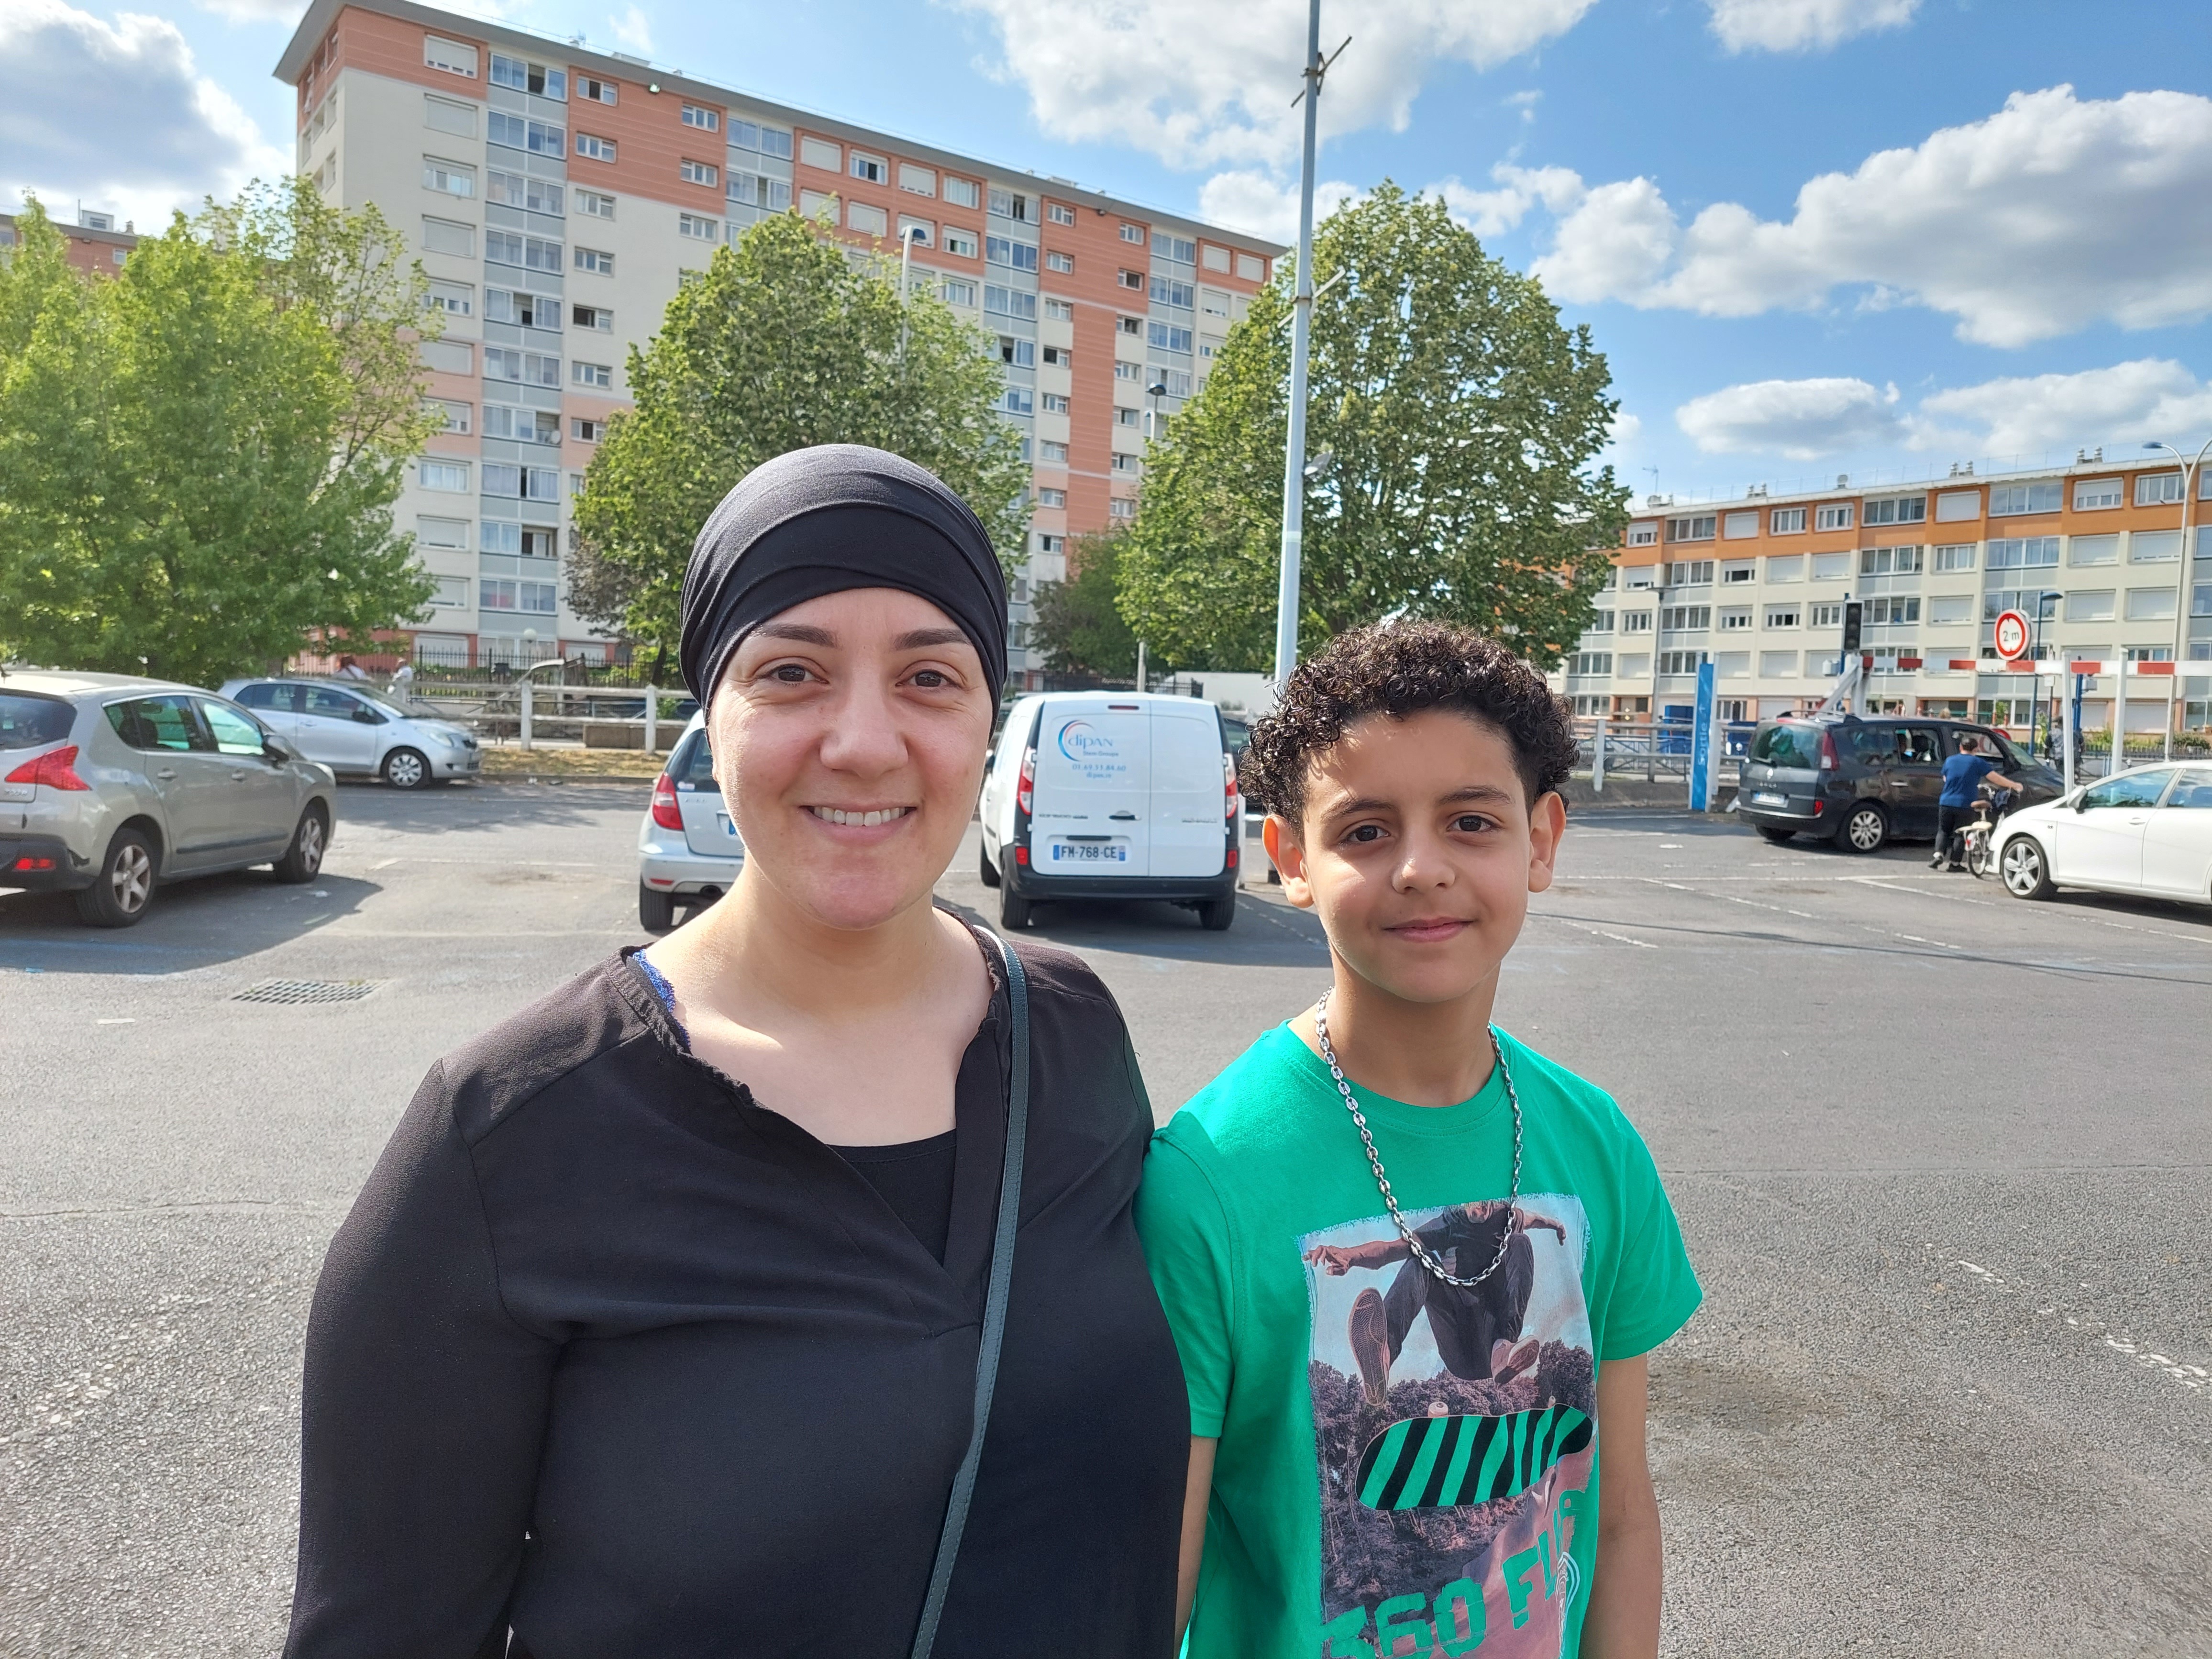 « Malheureusement, il y a des parents démissionnaires », s'agace Zineb, ici avec son fils Mohamed, ici devant le centre commercial Drancy Avenir. LP/Vincent Mongaillard